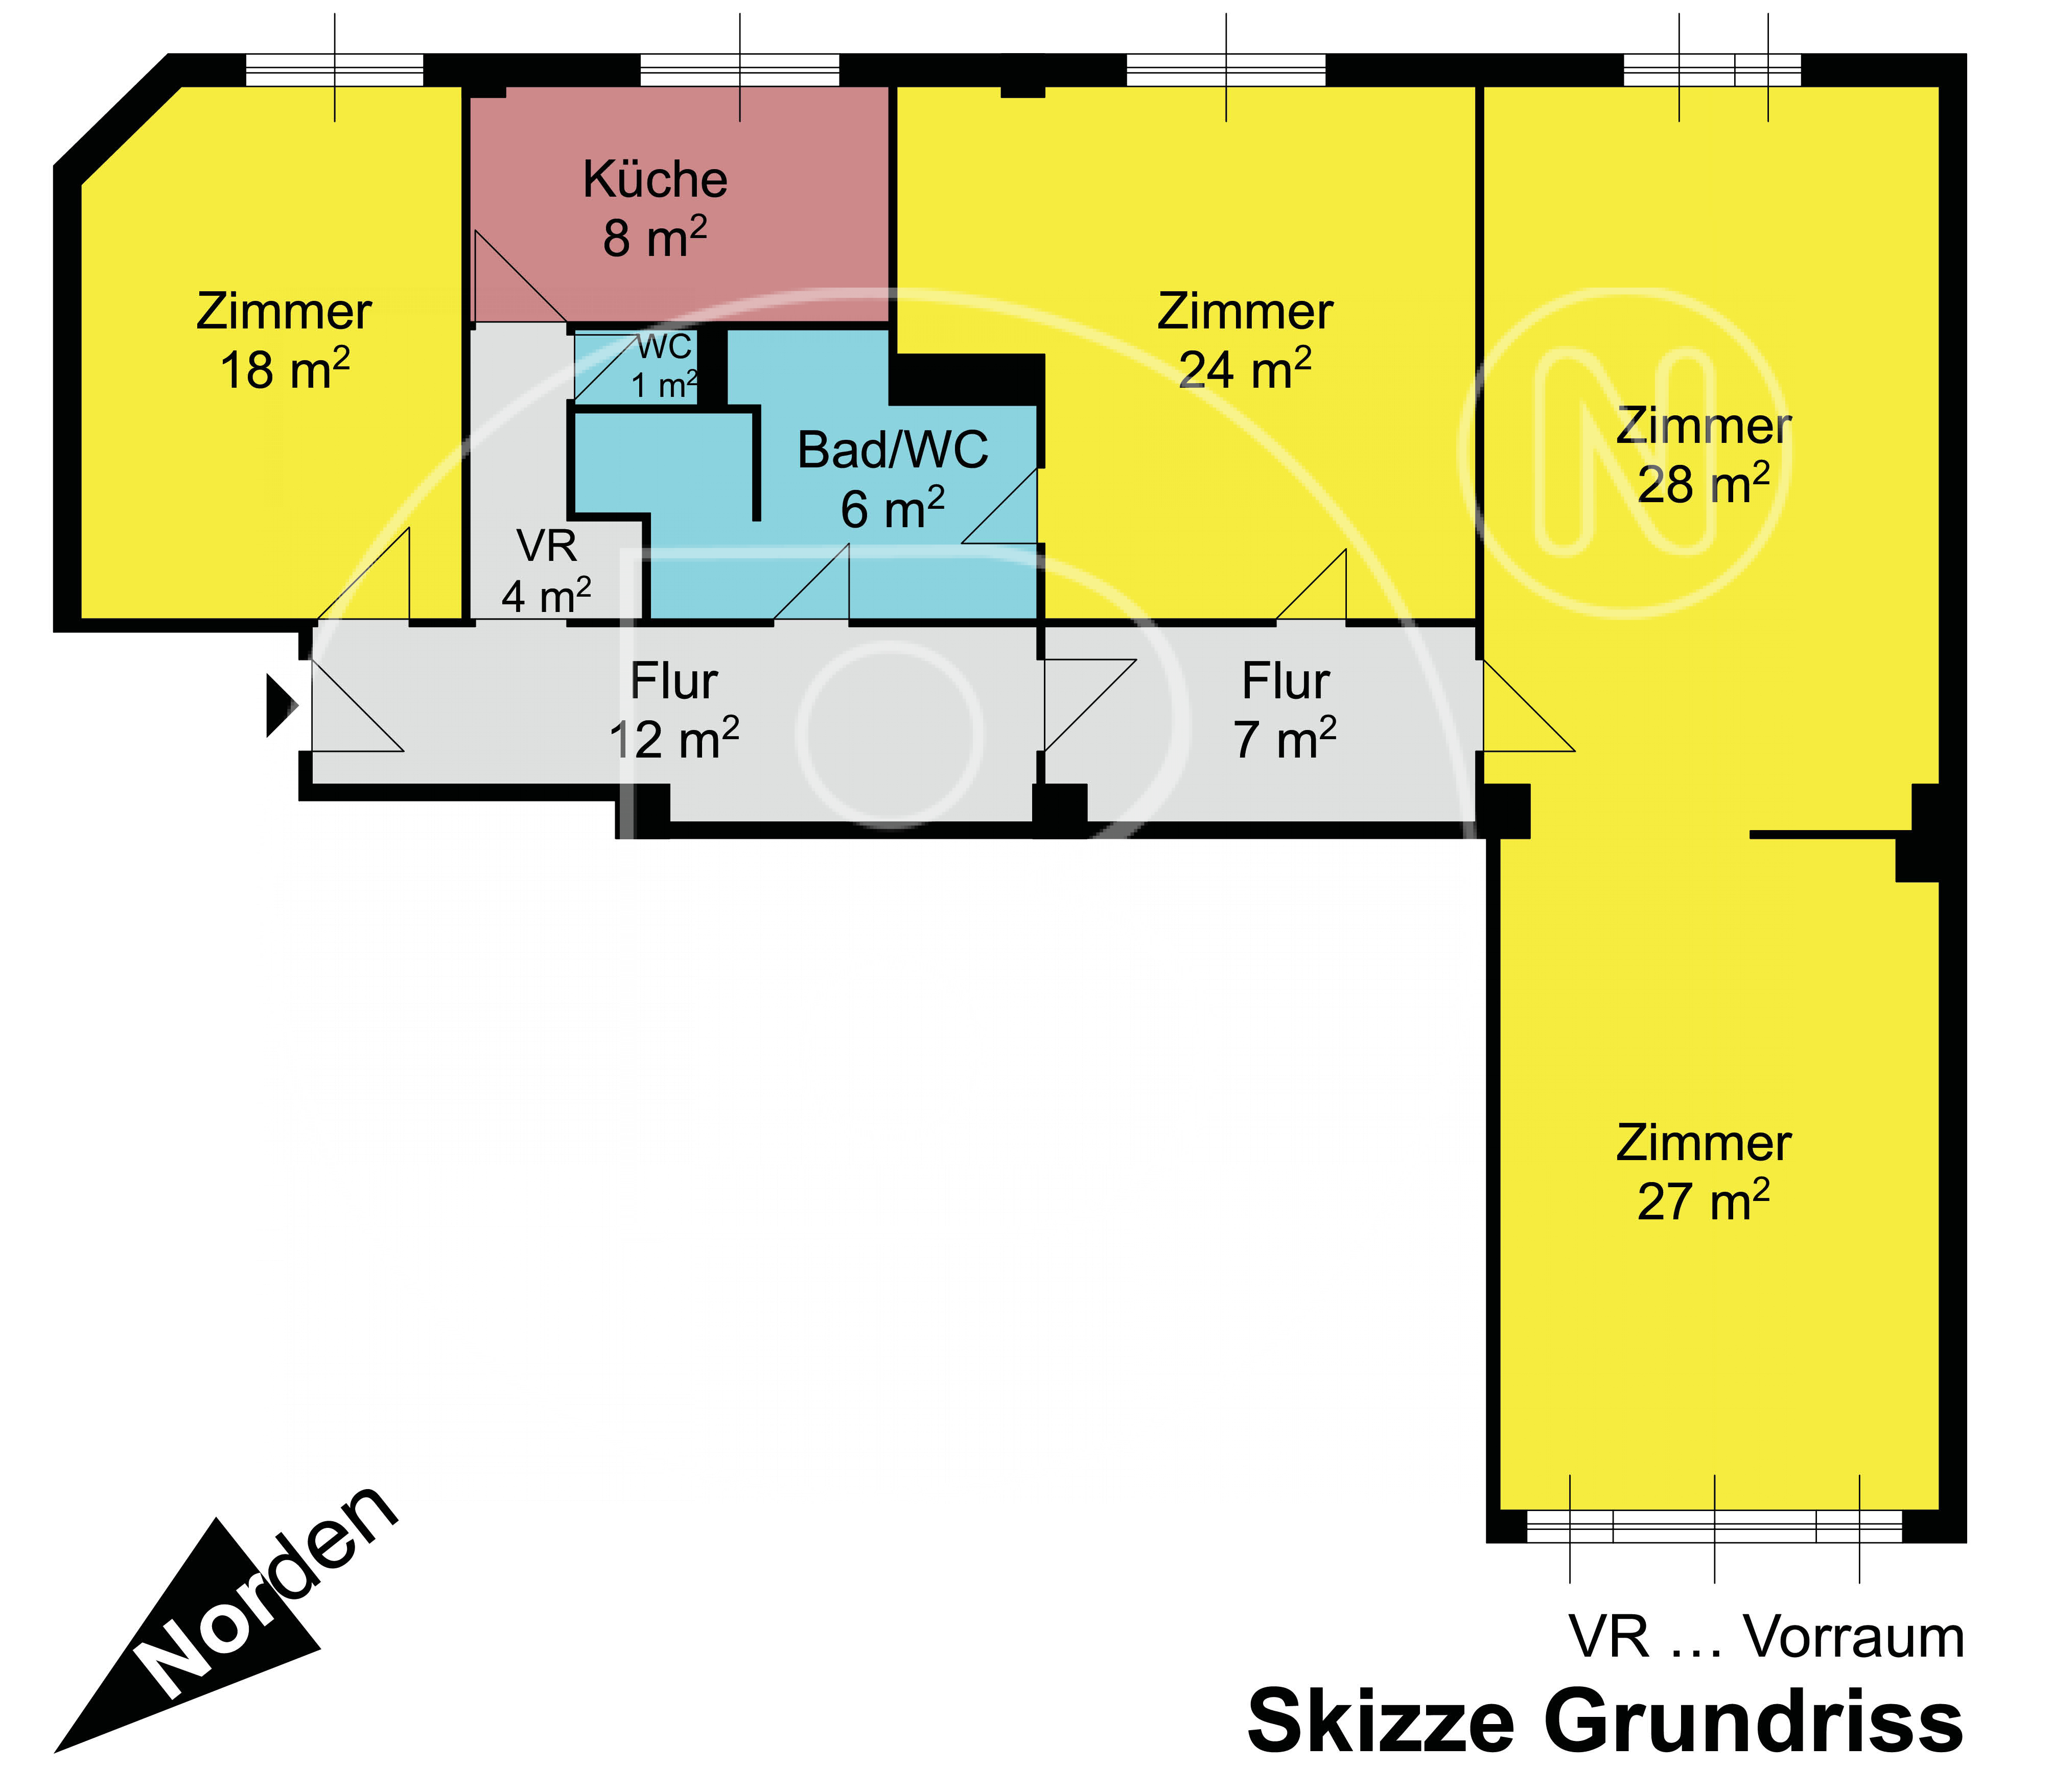 GRUNDRISS - Renovierungsbedürftiges Immobilienjuwel in perfekter Lage